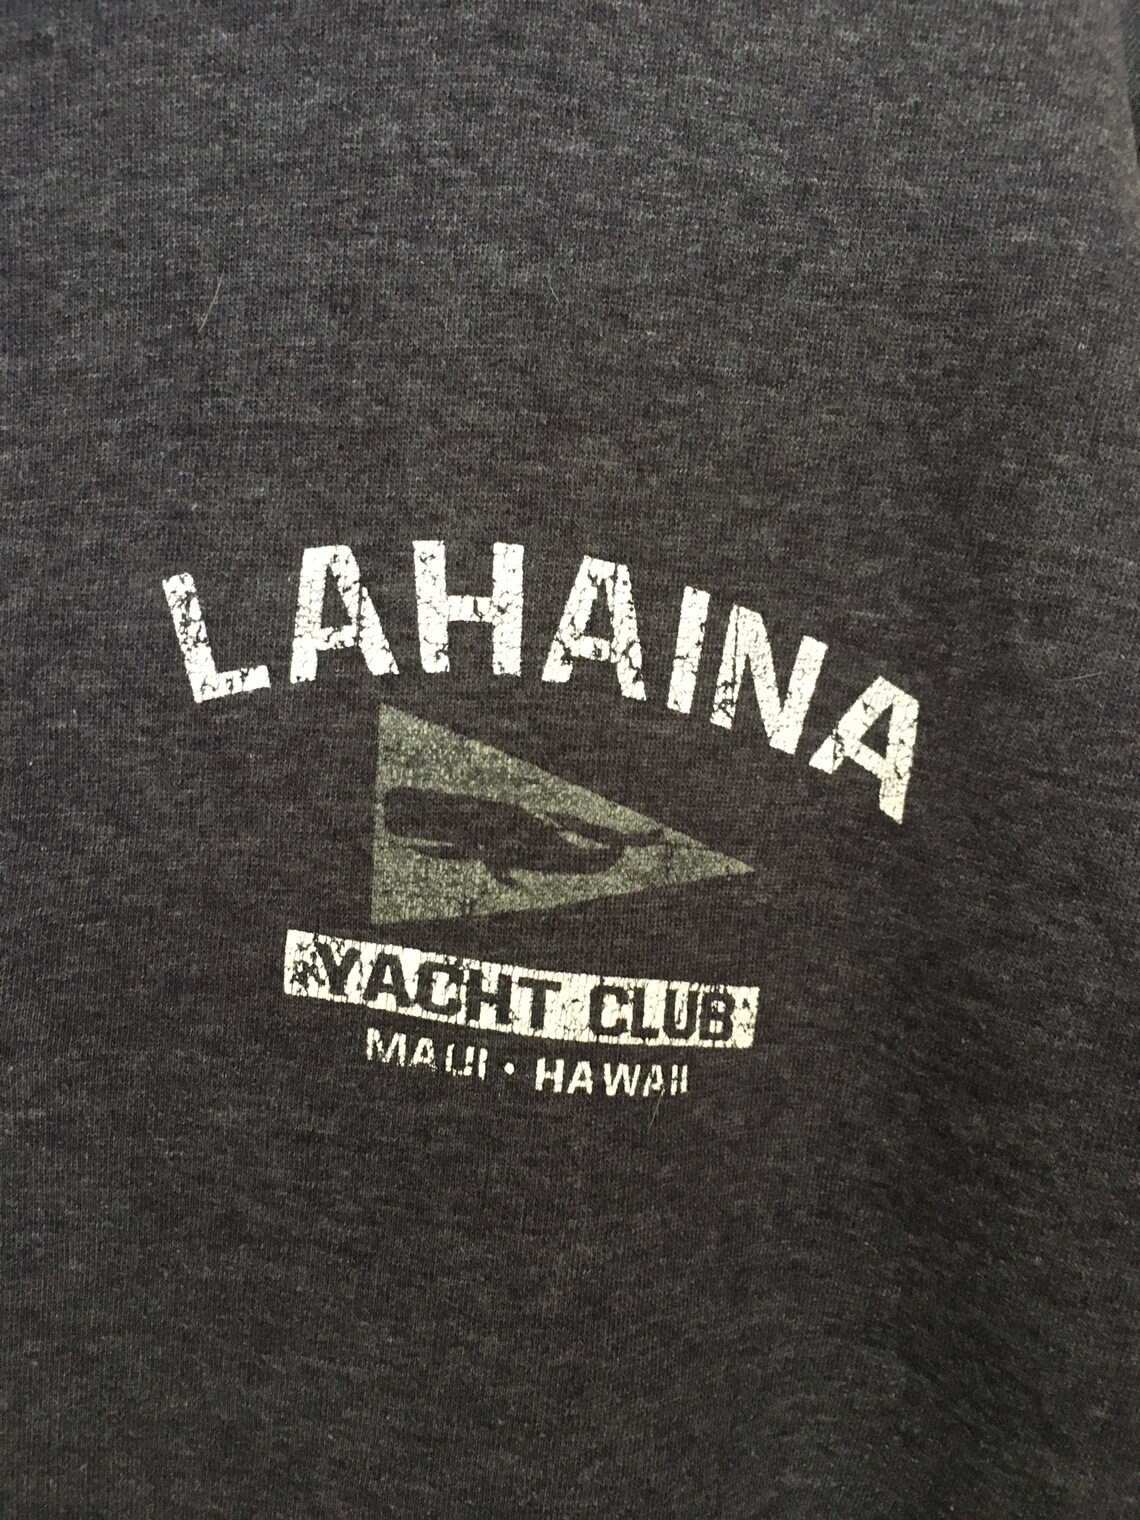 lahaina yacht club flag